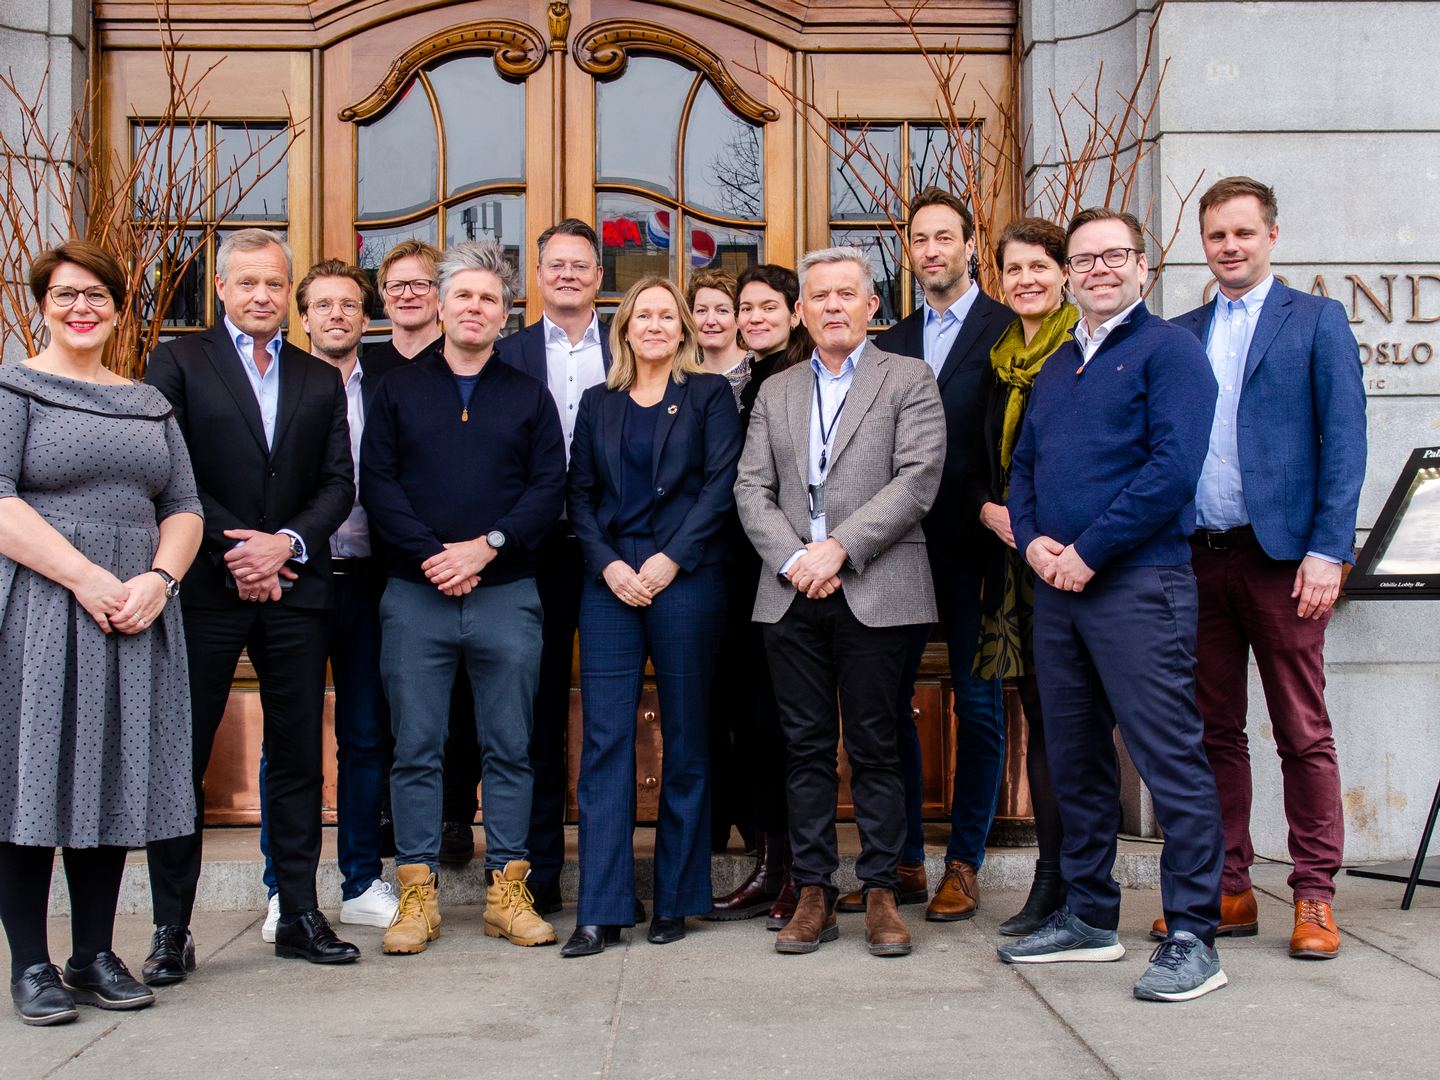 STRAKSTILTAK 2.0: Onsdag 16. mars inviterte Grønn Byggallianse og Norsk Eiendom til lansering av Strakstiltak 2.0 for boligutviklere. Åtte store aktører signerte på stedet. | Foto: Grønn Byggallianse